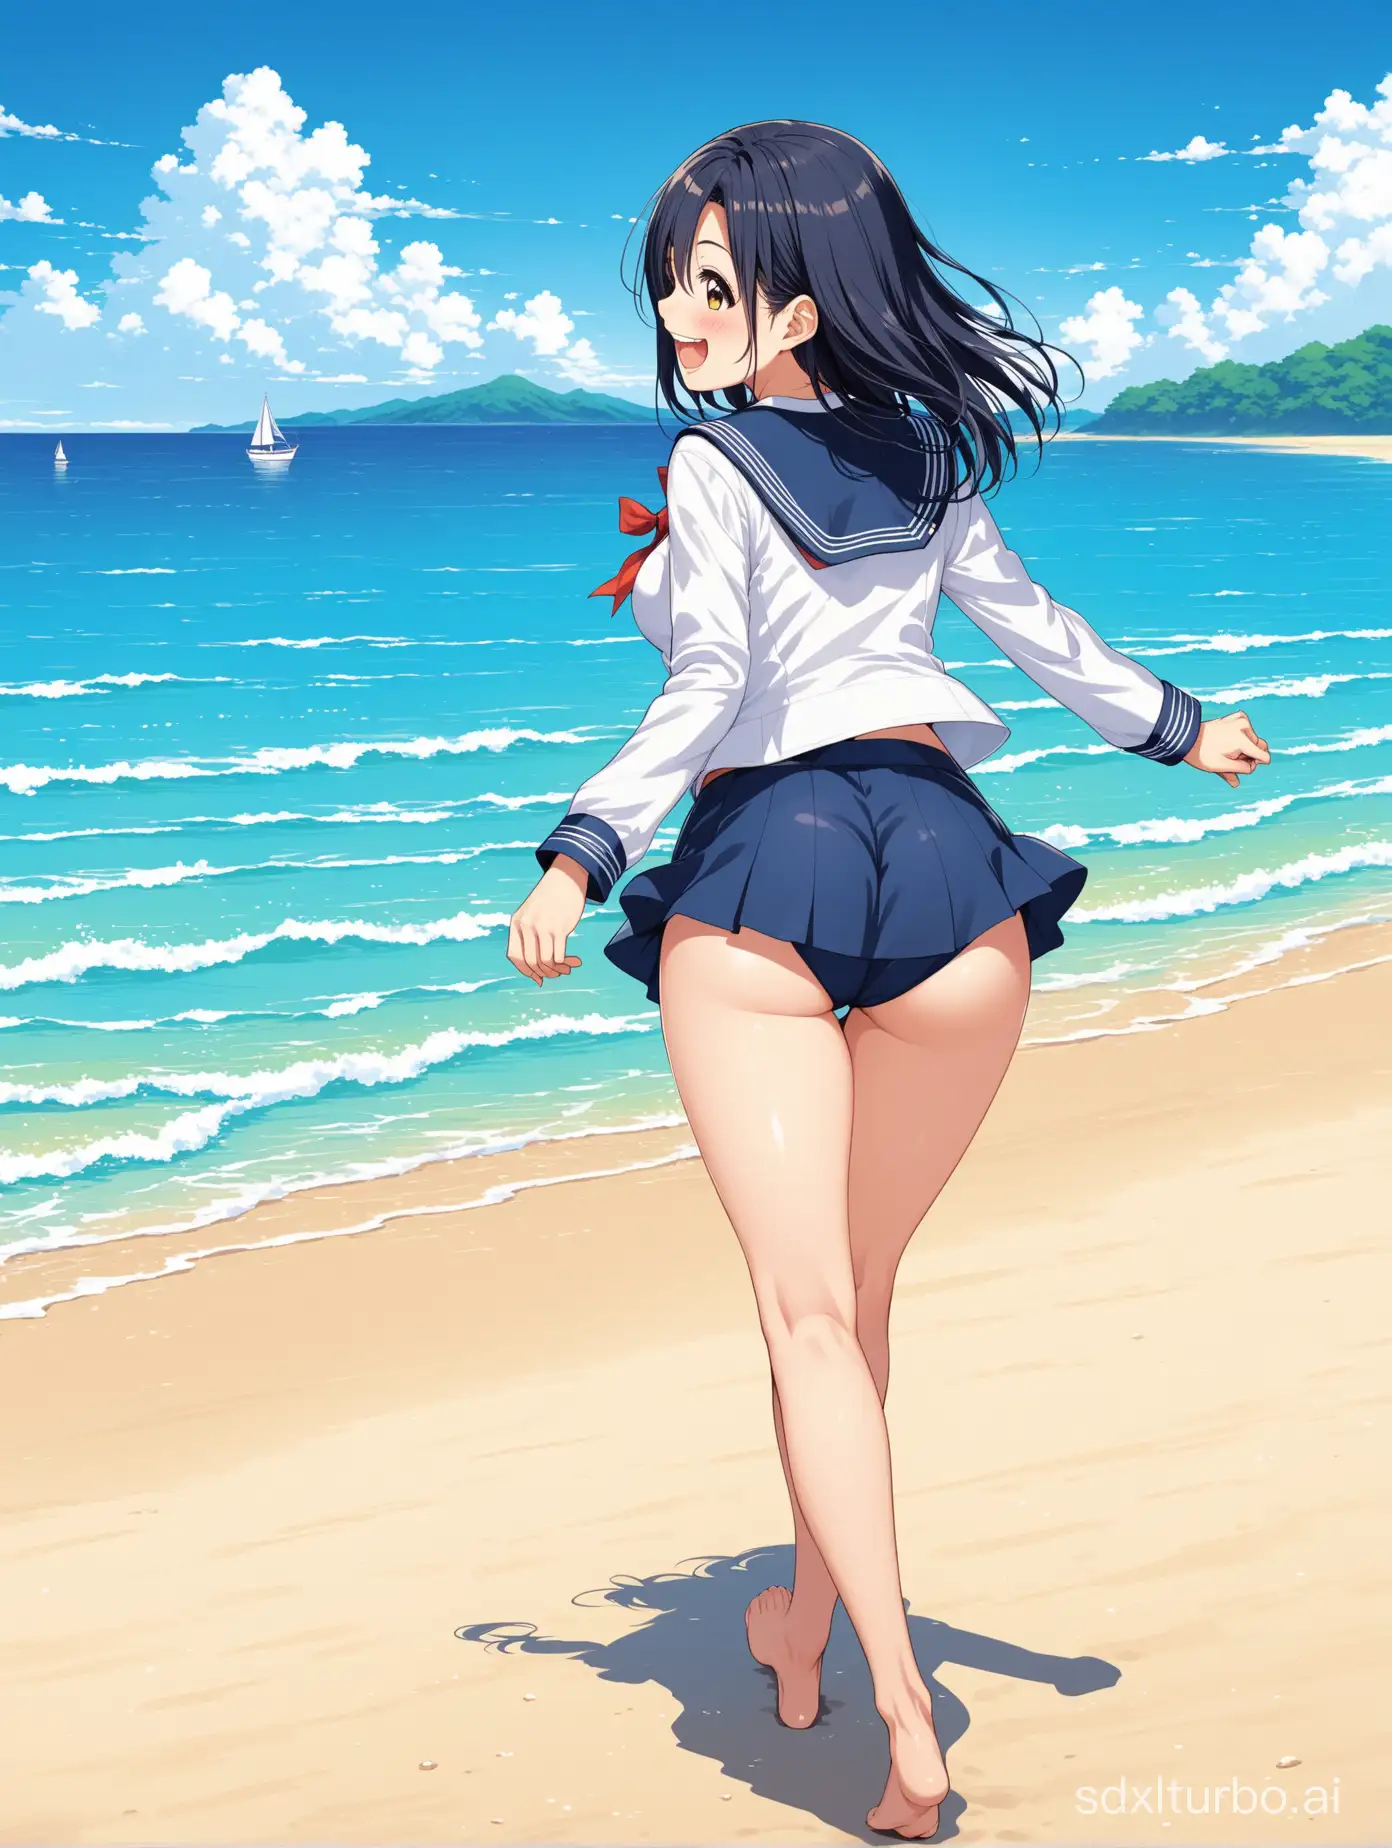 Fujiwara-Norika-Walking-on-Beach-in-Sailor-Suit-Laughing